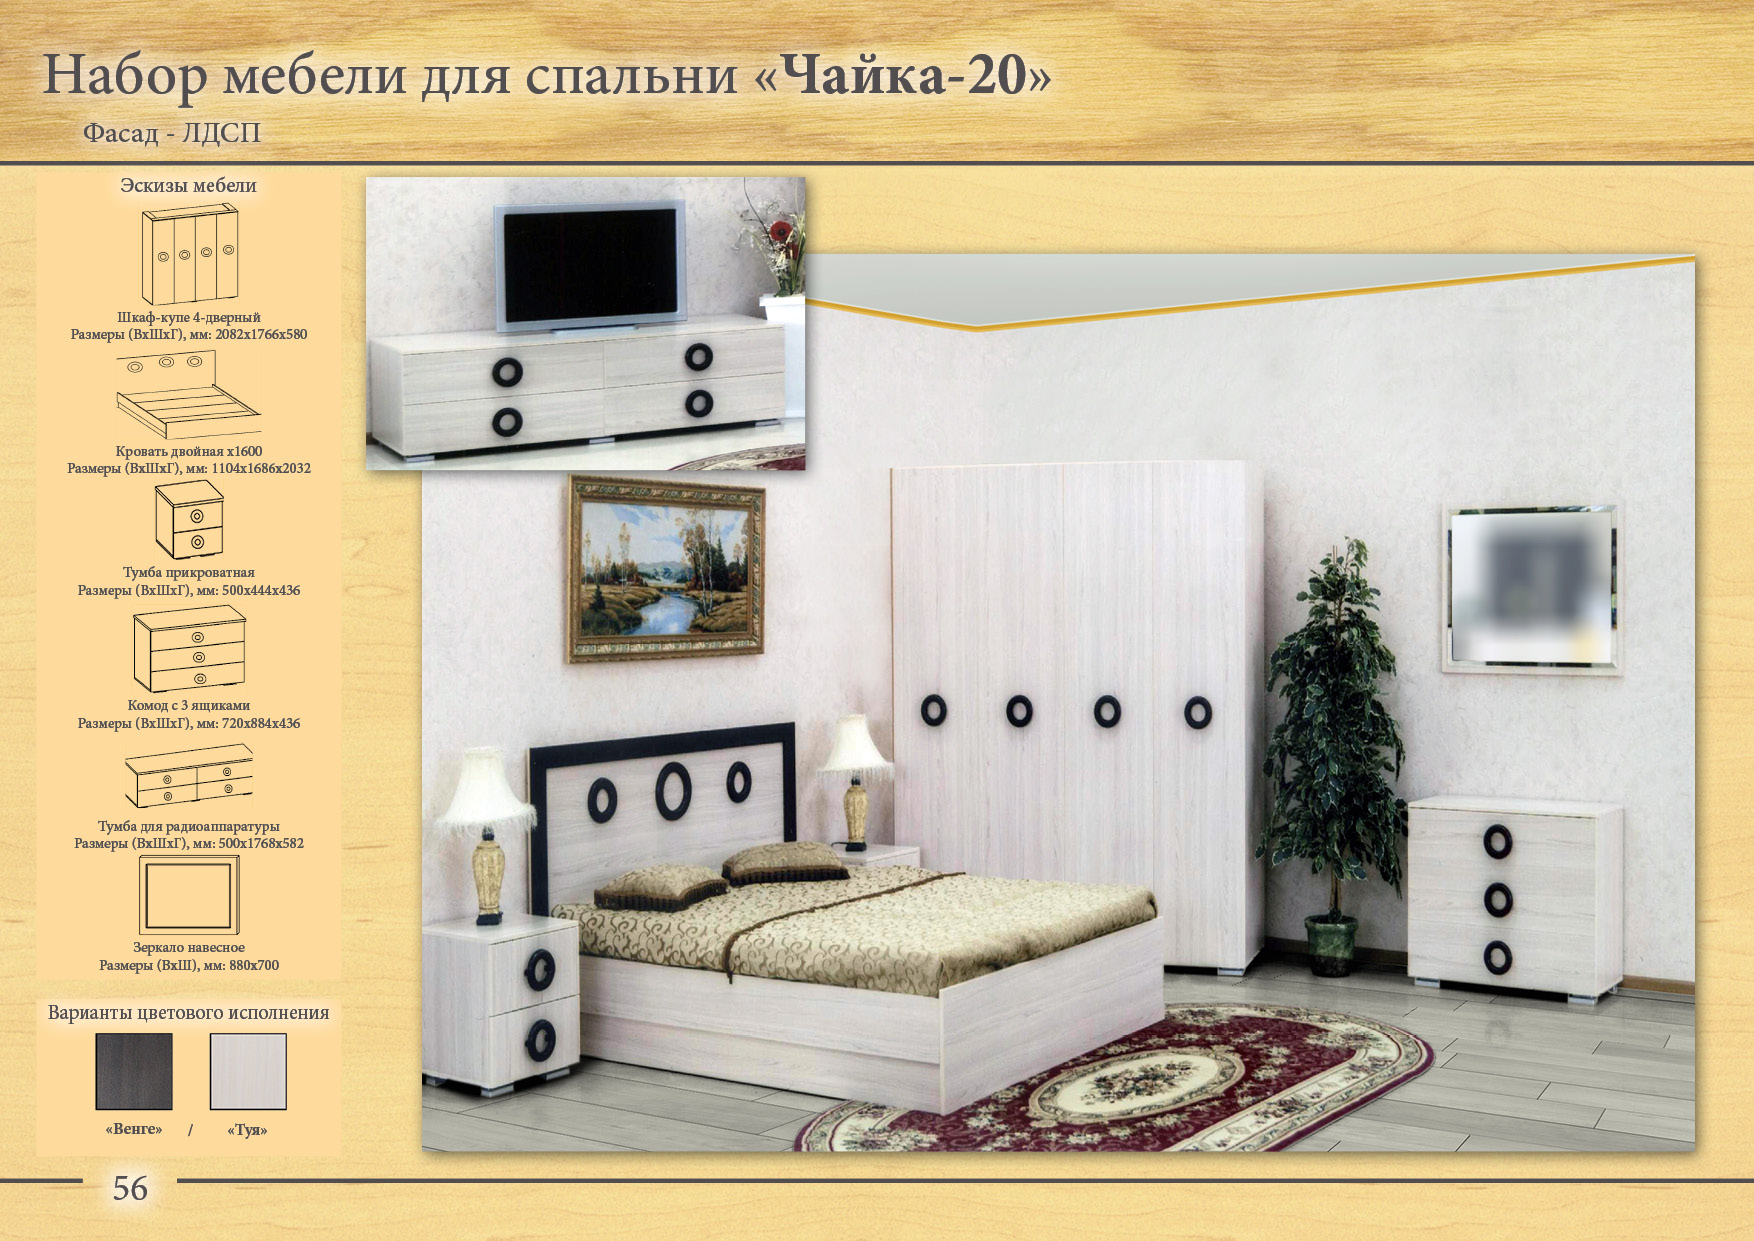 Спальня Чайка 20 продается целиком и по модулям мебель ЗАО Тамбов